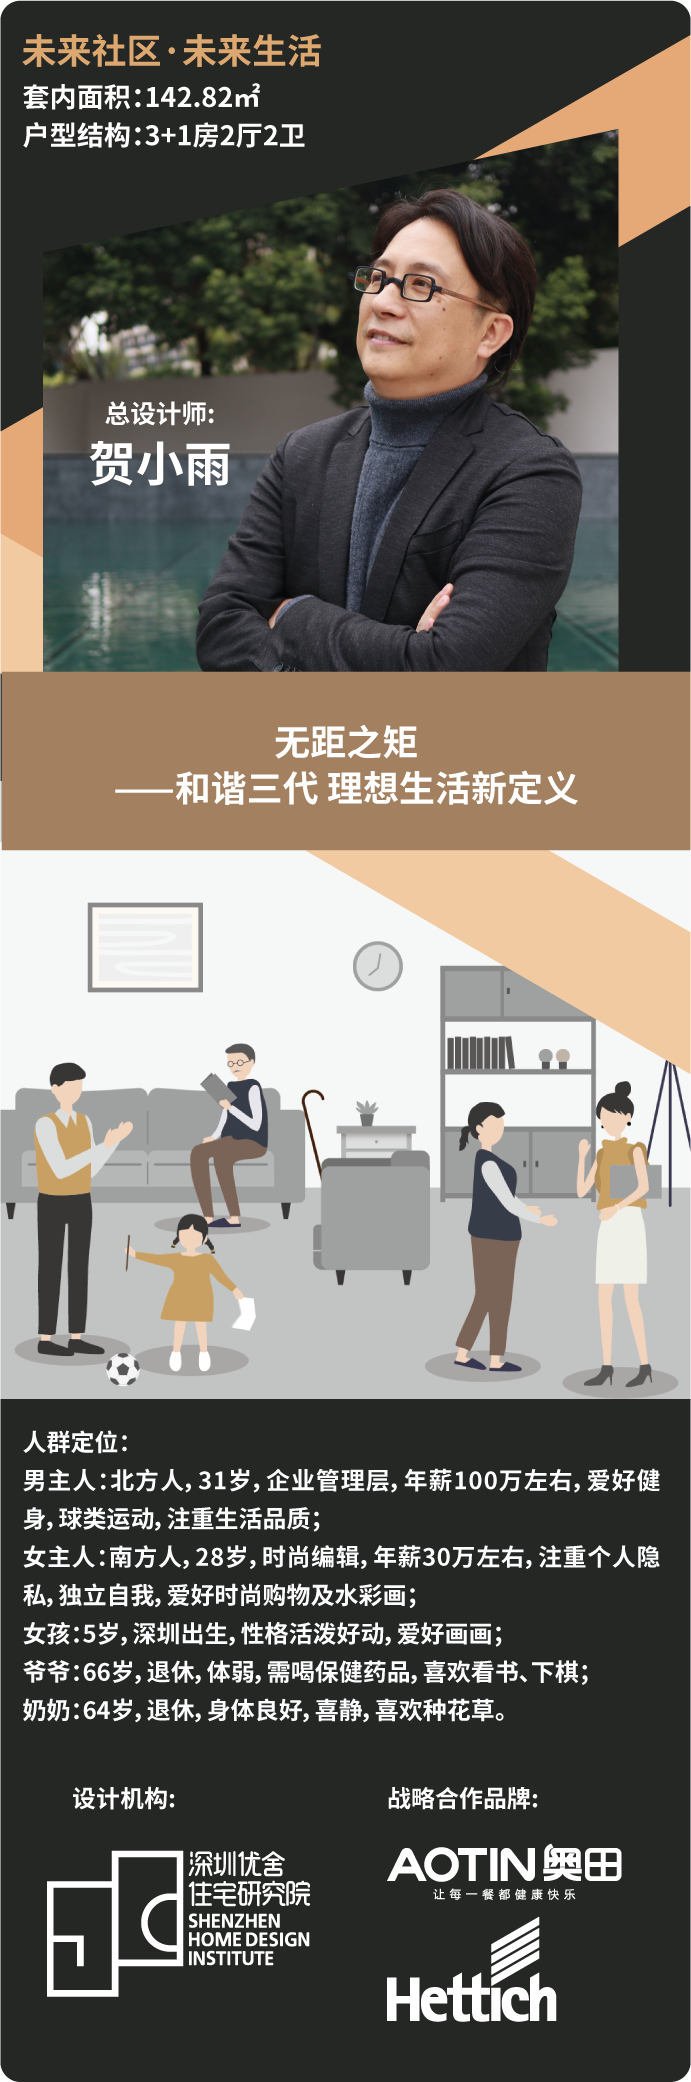 杏鑫注册助力深圳国际住宅展，用创新透视品质家居生活